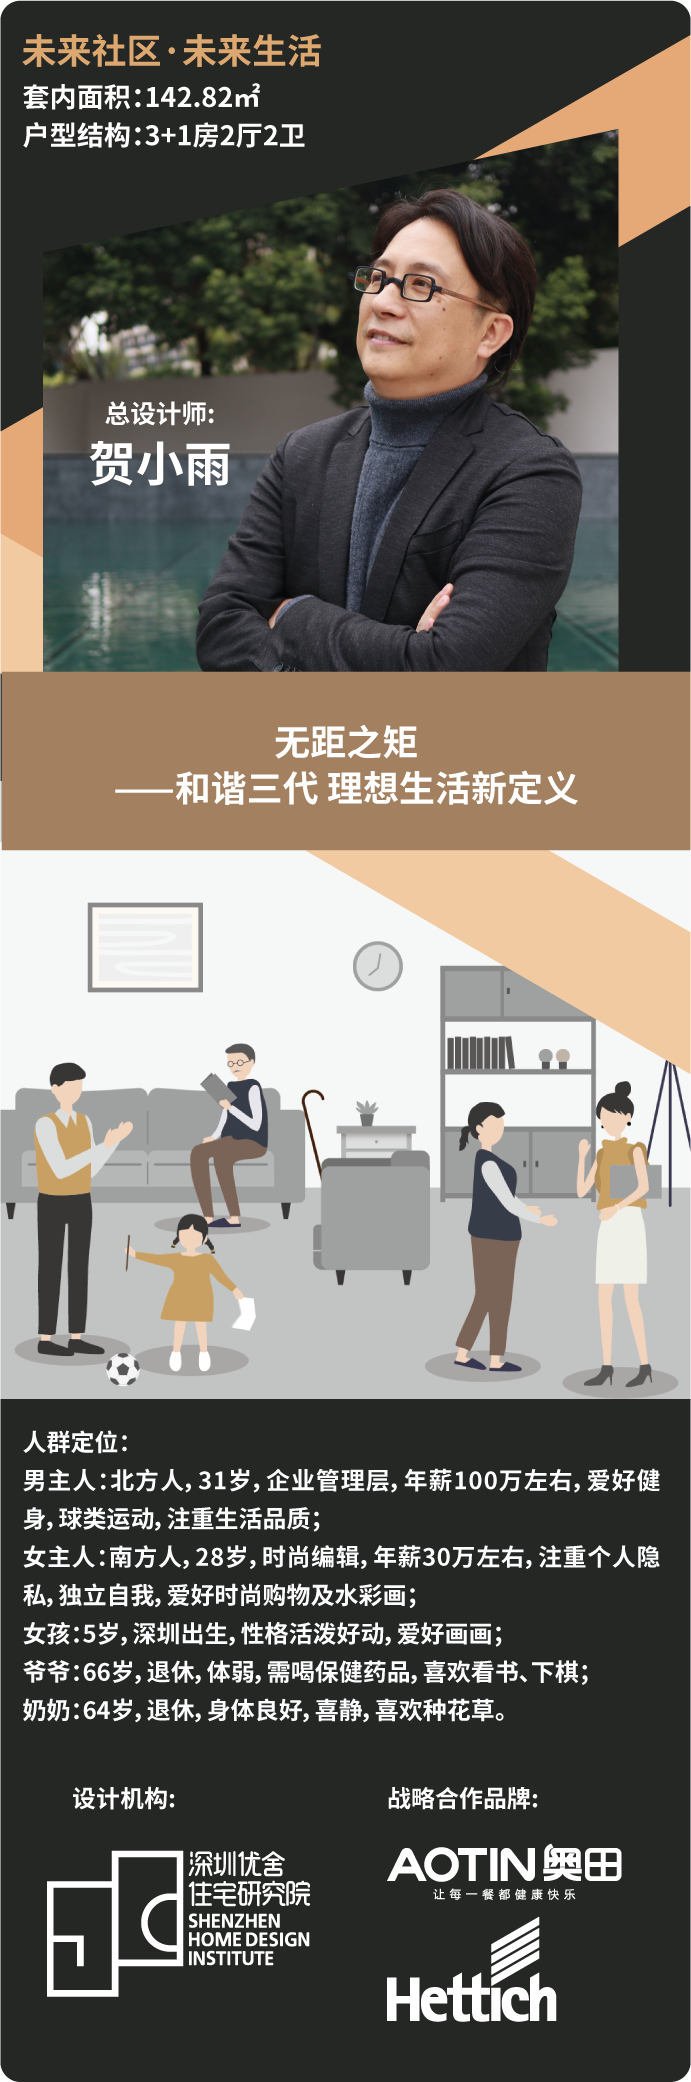 杏鑫注册助力深圳国际住宅展，用创新透视品质家居生活